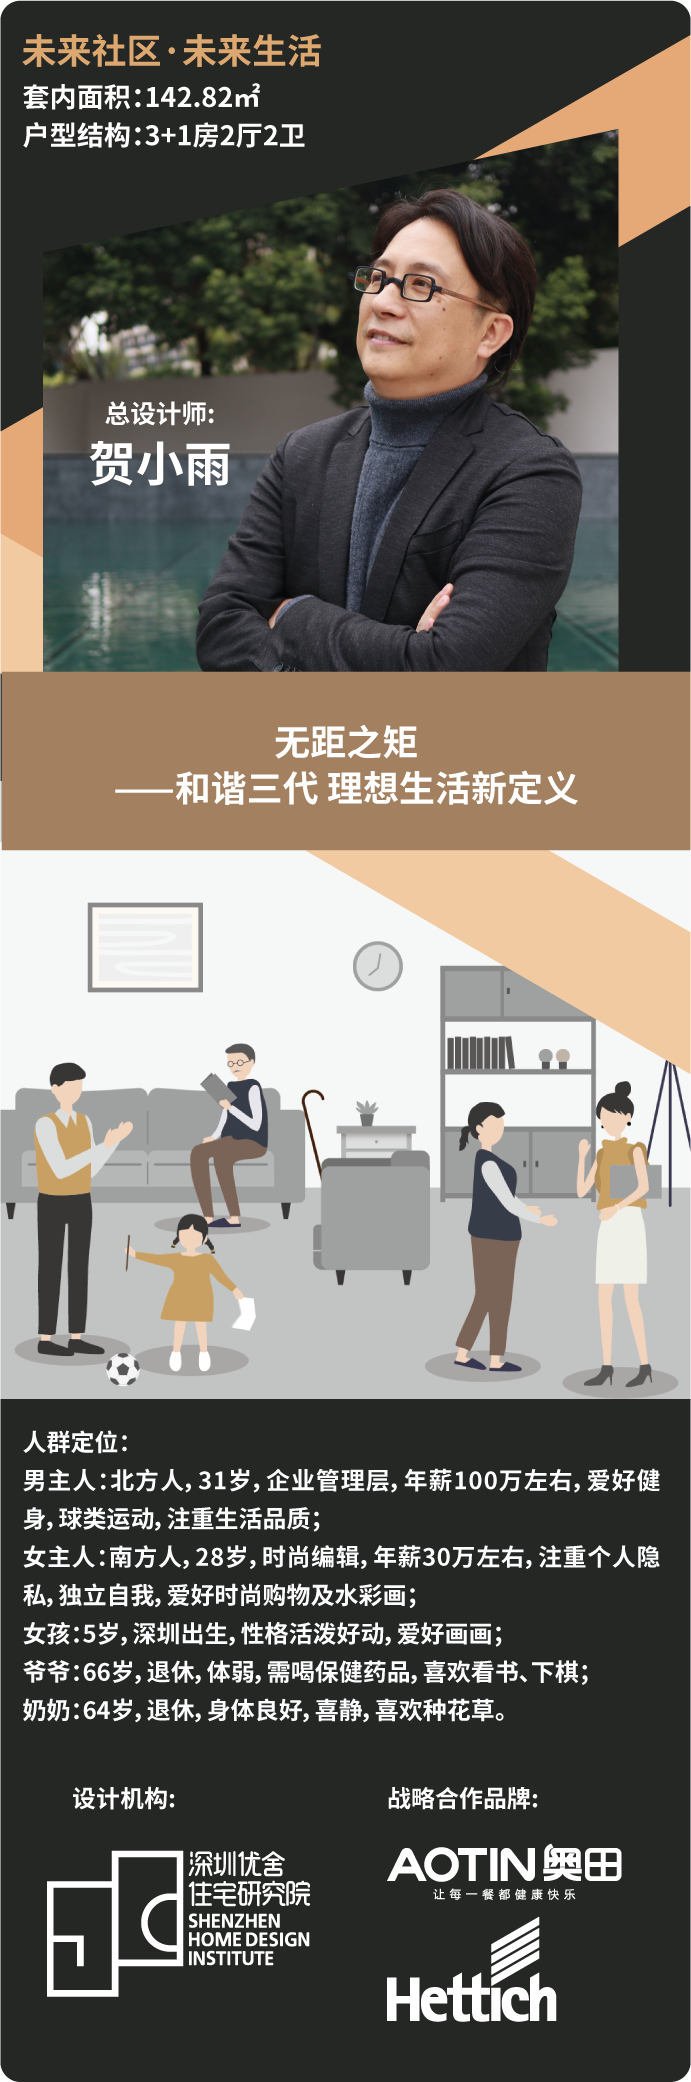 杏鑫注册助力深圳国际住宅展，用创新透视品质家居生活